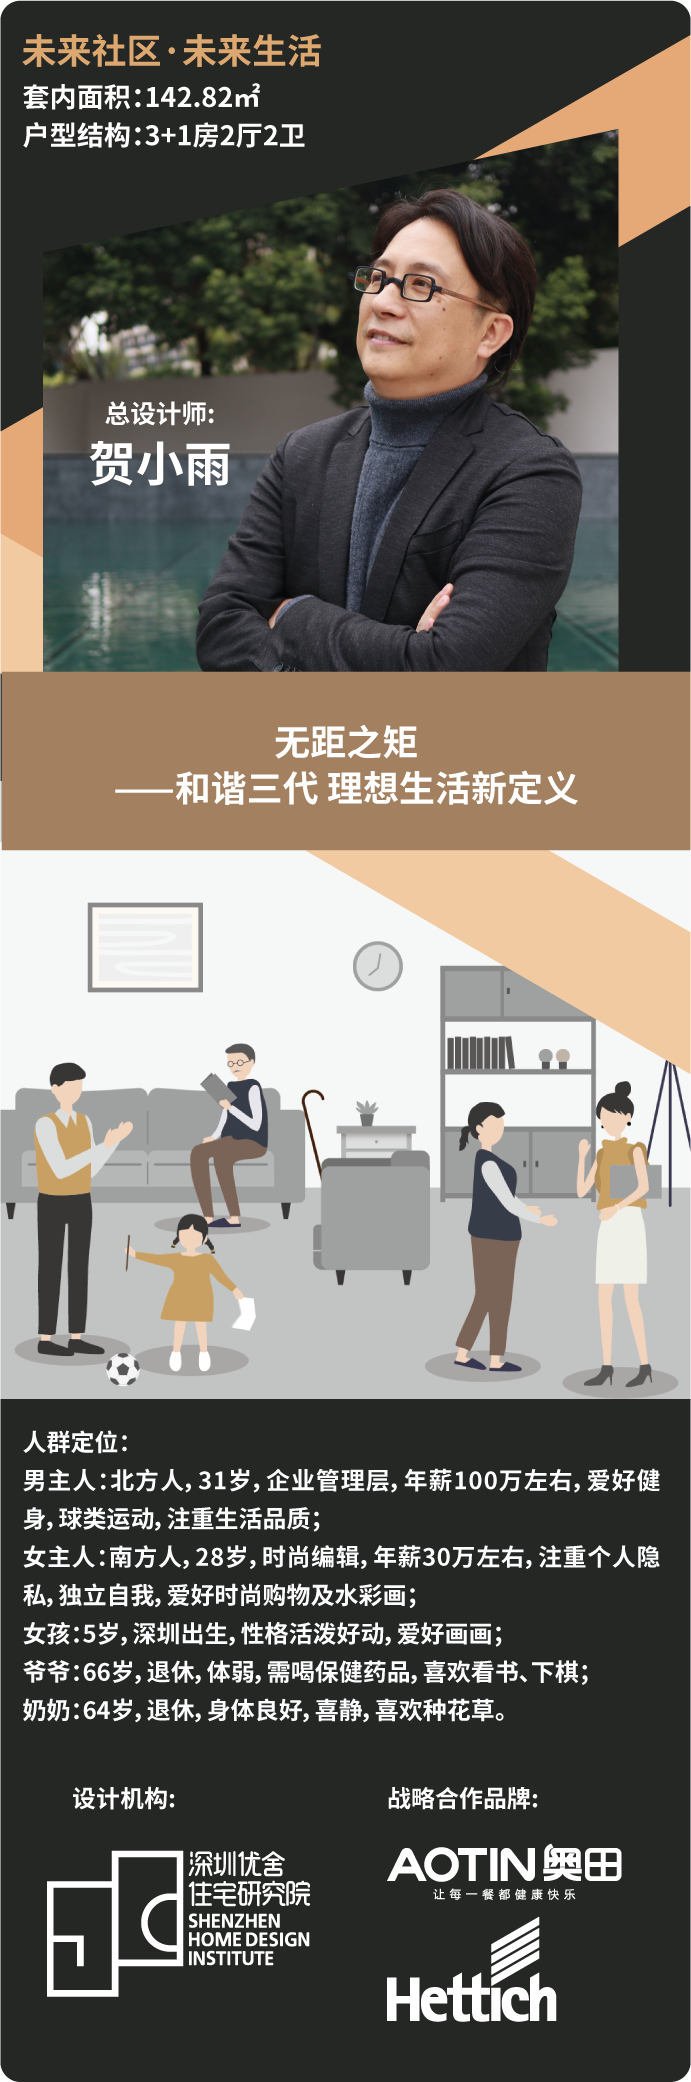 杏鑫注册助力深圳国际住宅展，用创新透视品质家居生活